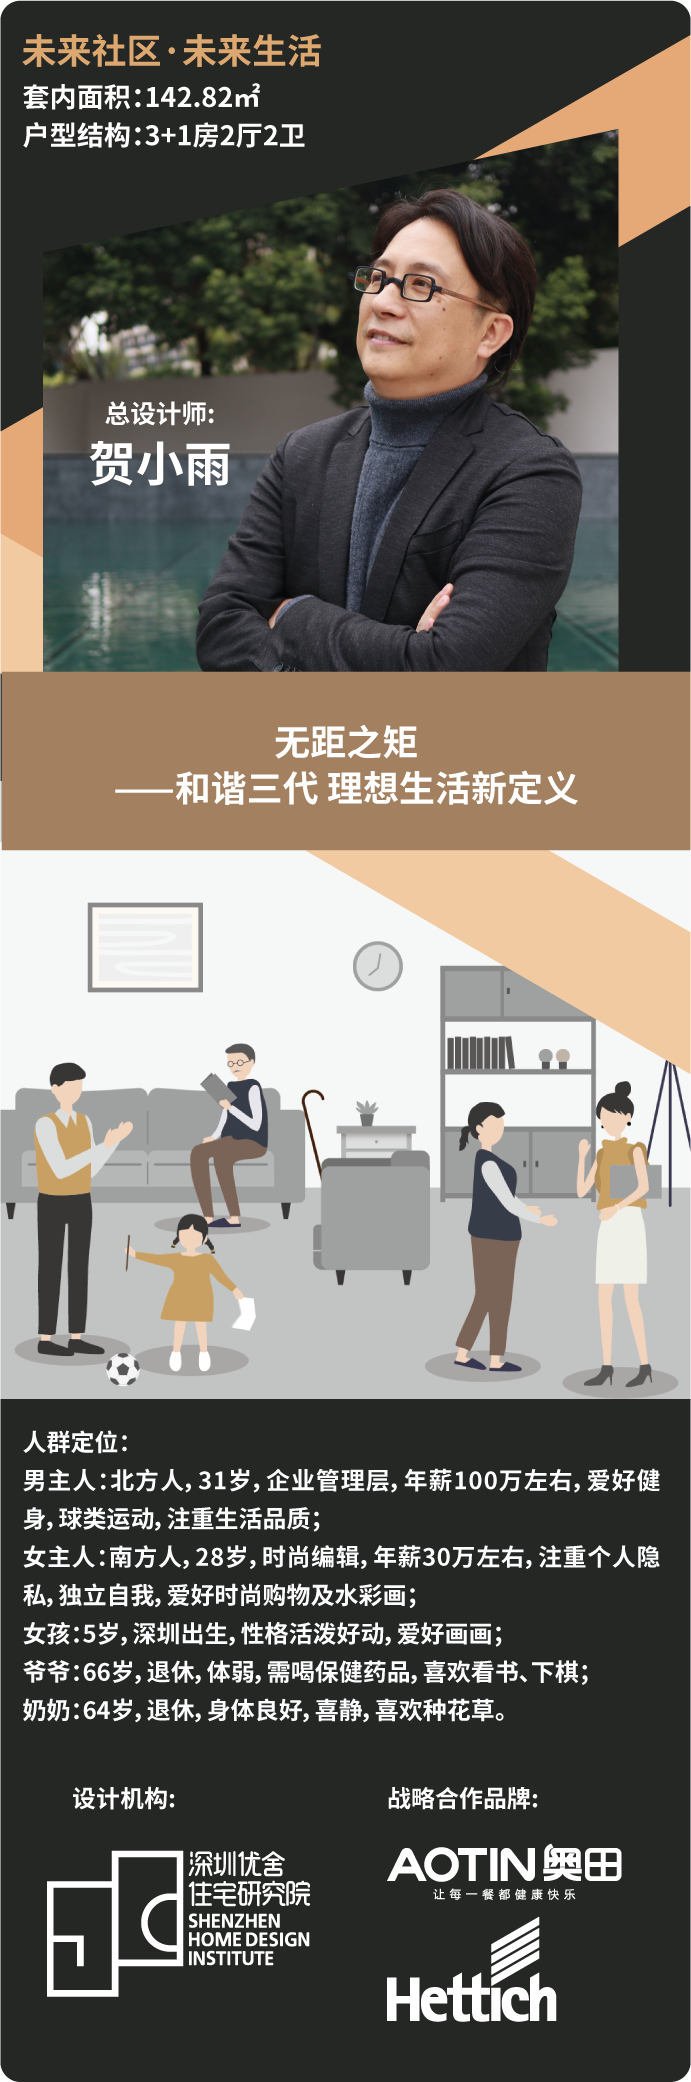 杏鑫注册助力深圳国际住宅展，用创新透视品质家居生活